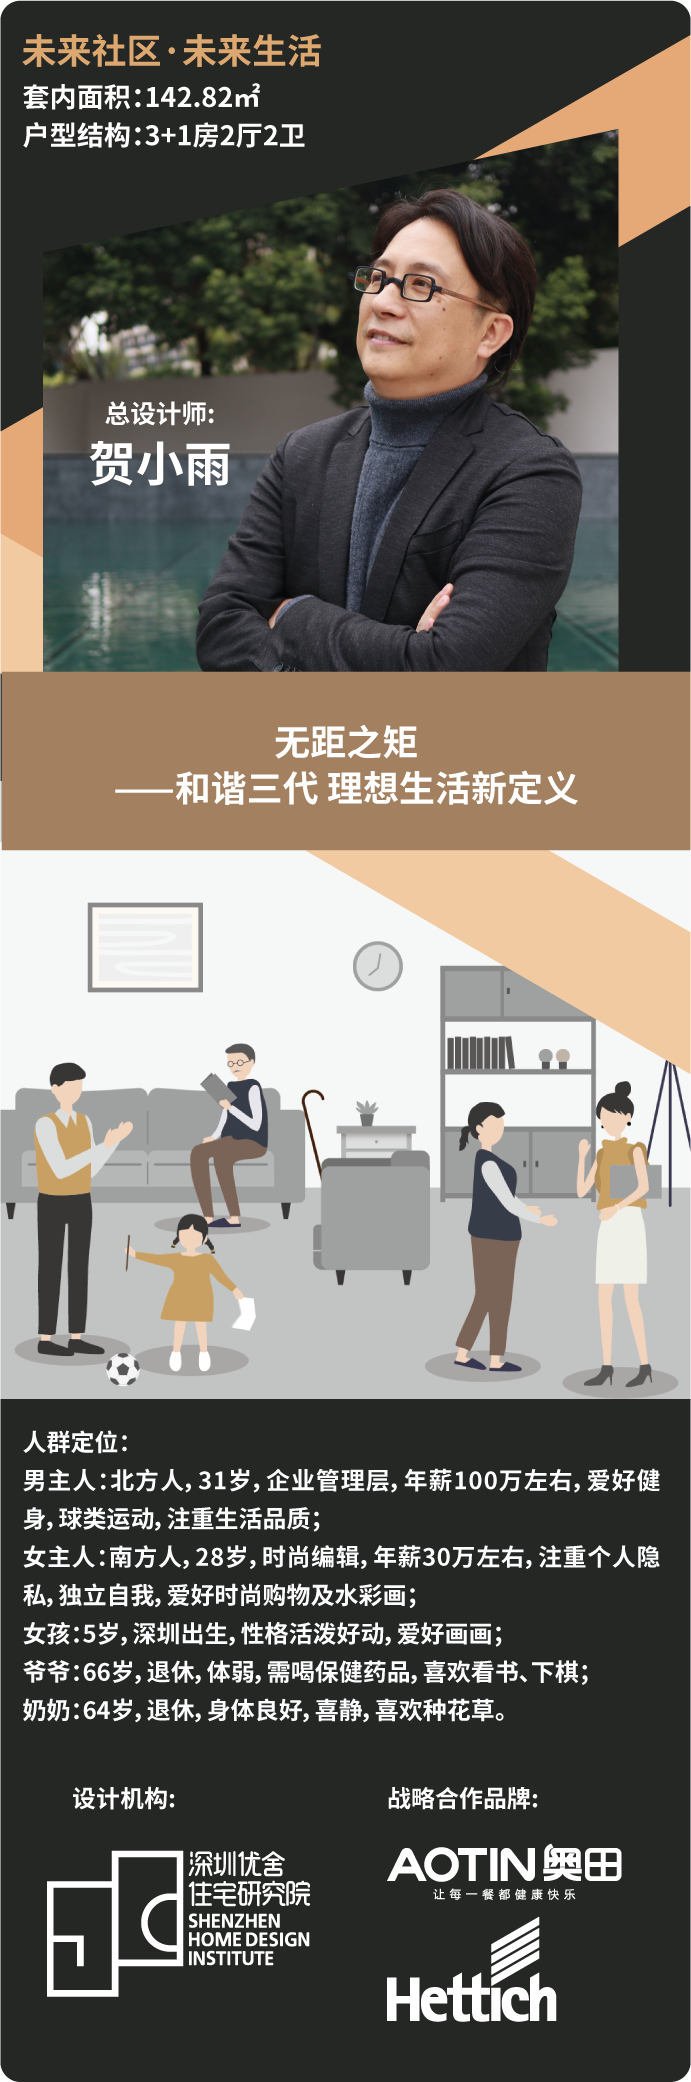 杏鑫注册助力深圳国际住宅展，用创新透视品质家居生活